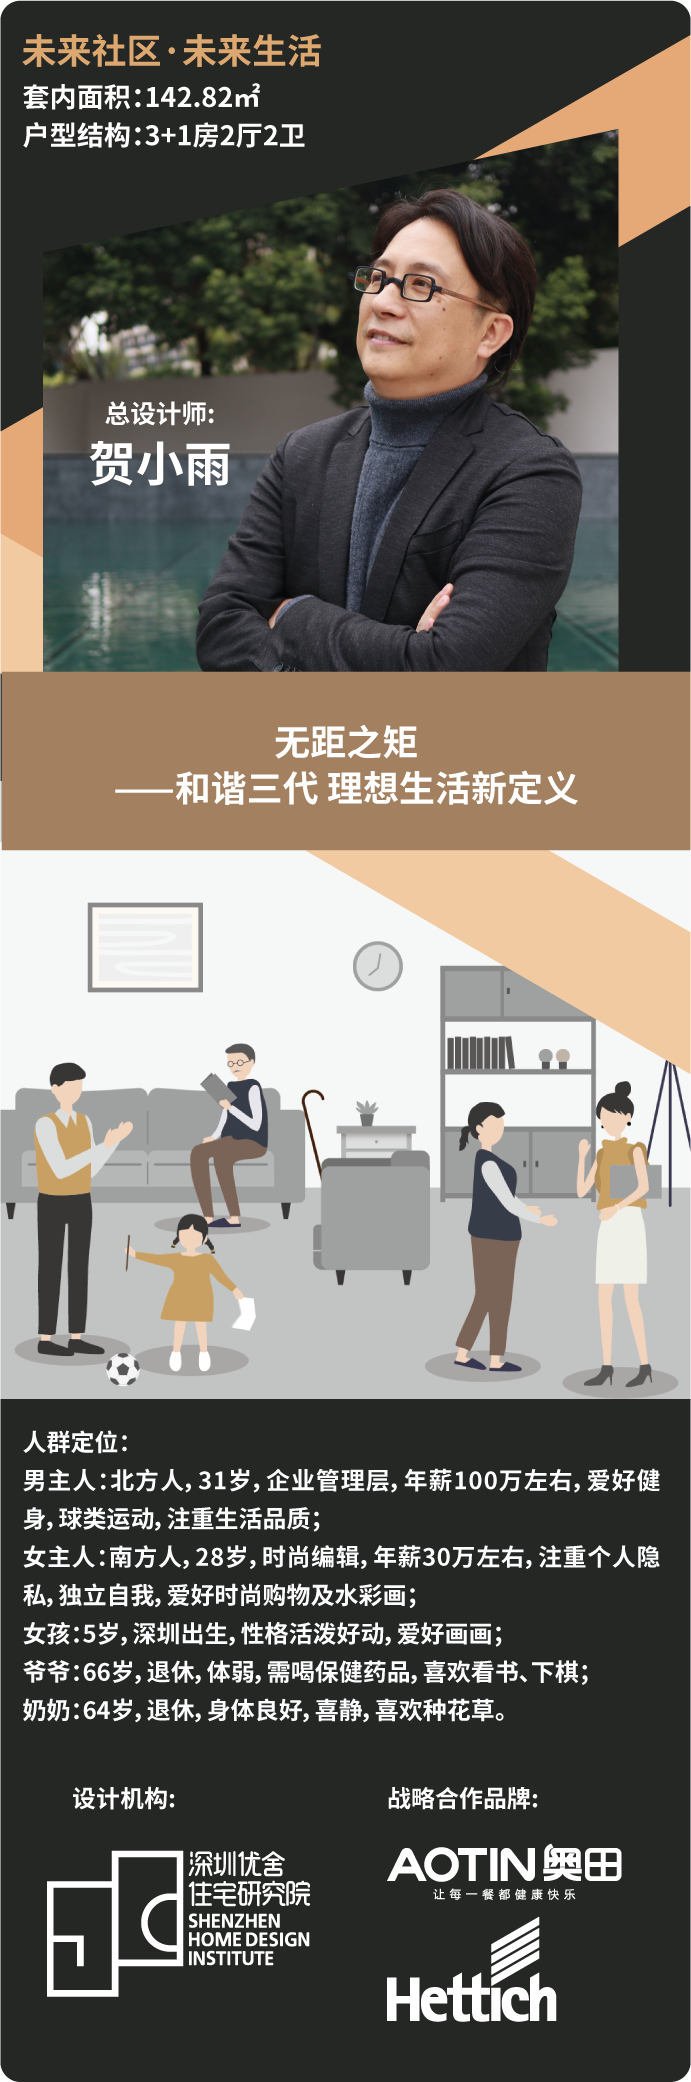 杏鑫注册助力深圳国际住宅展，用创新透视品质家居生活